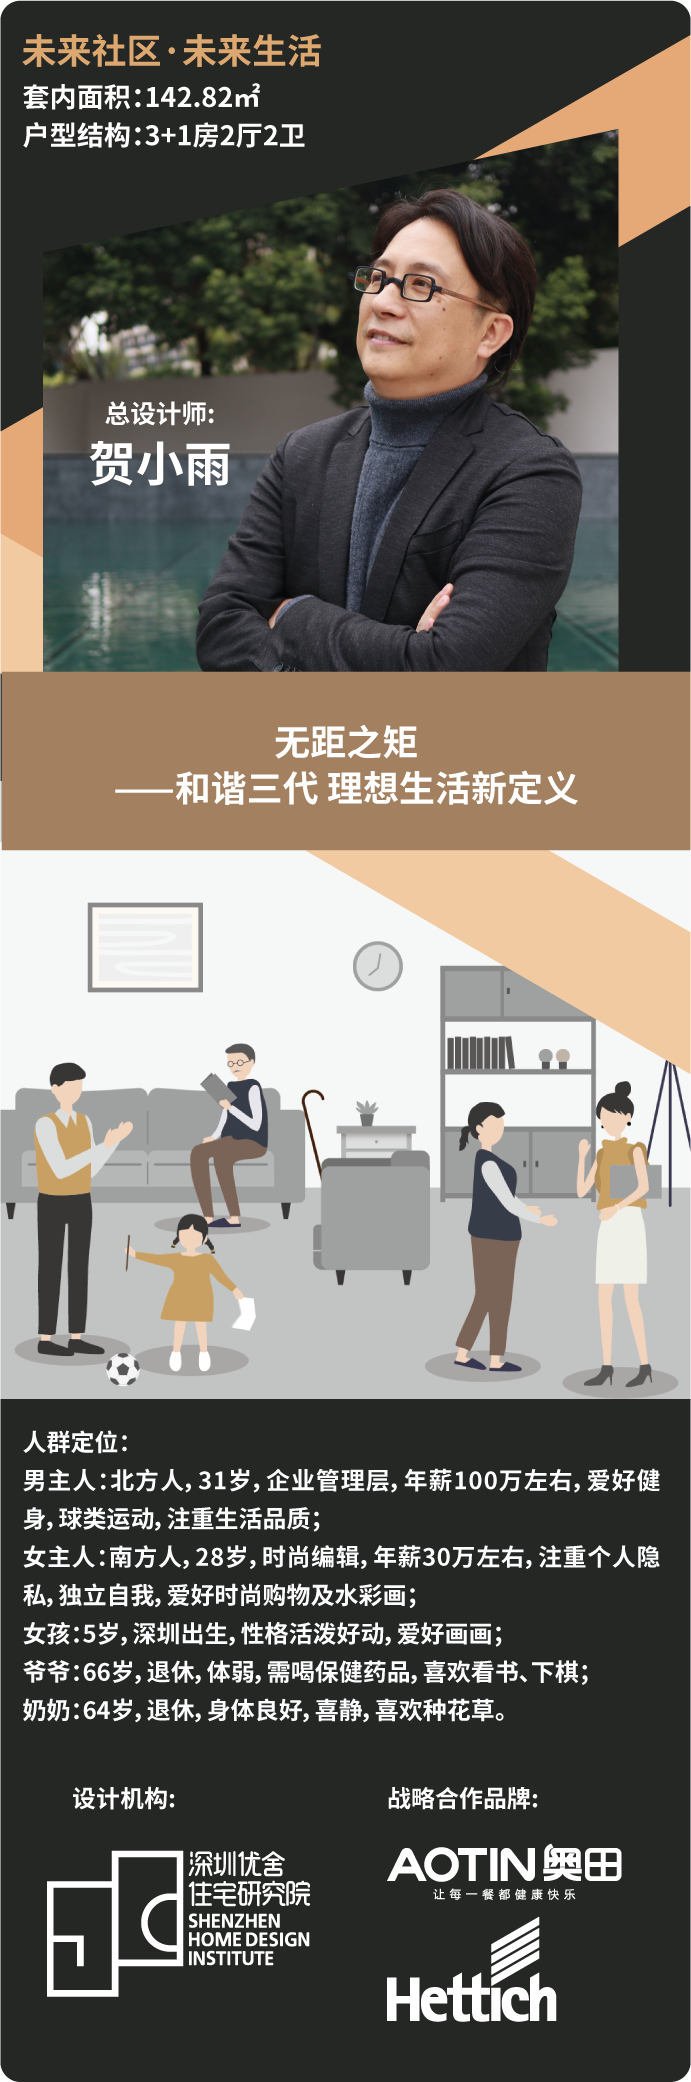 杏鑫注册助力深圳国际住宅展，用创新透视品质家居生活